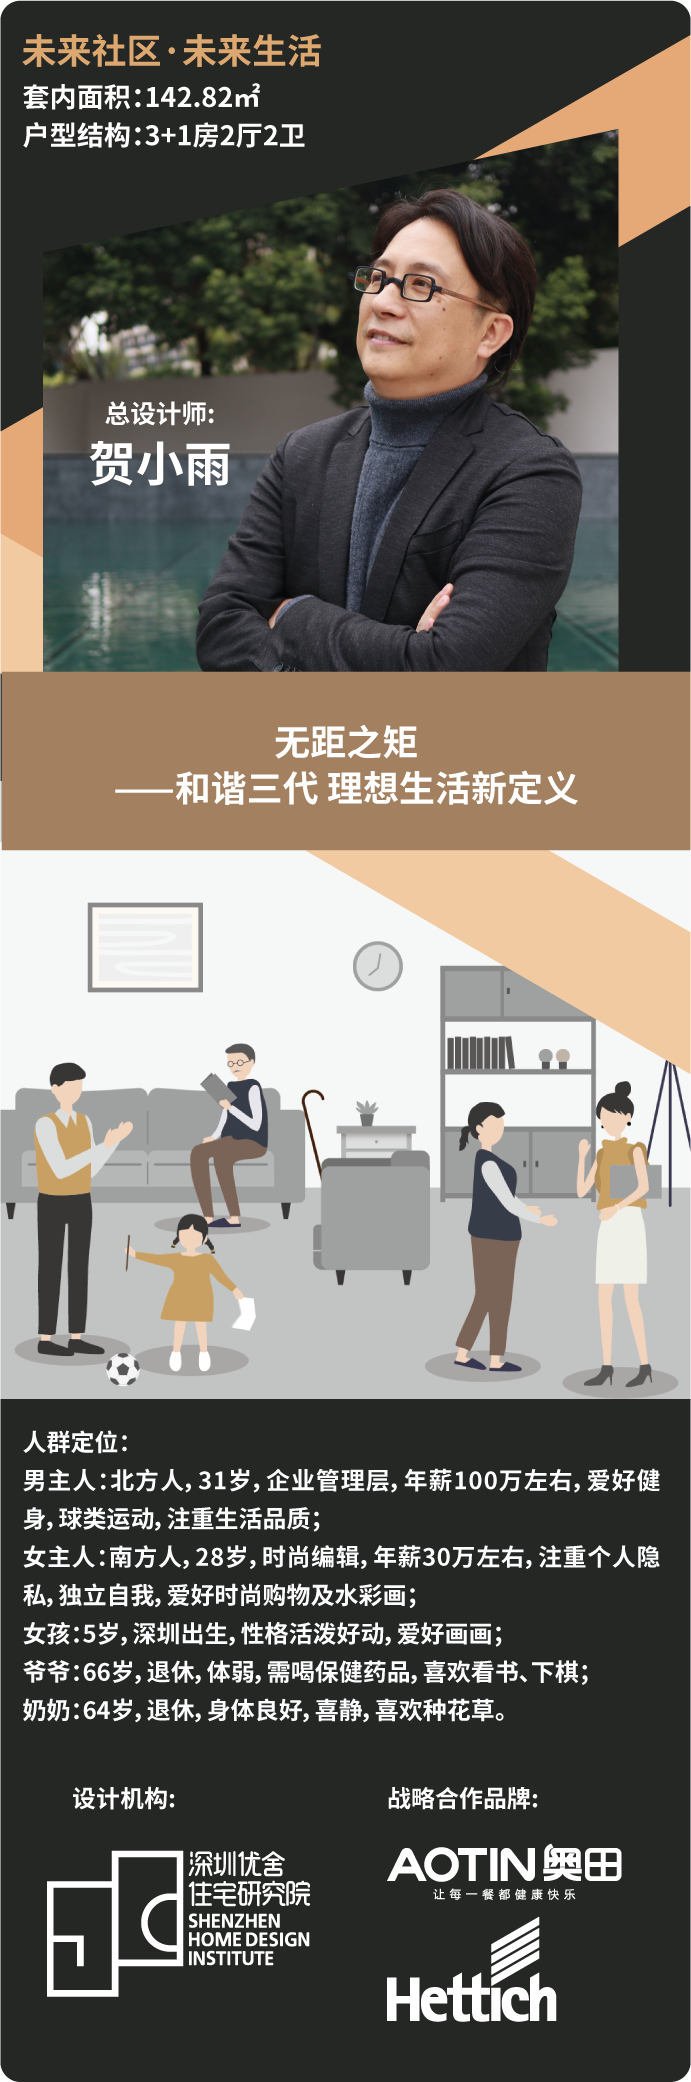 杏鑫注册助力深圳国际住宅展，用创新透视品质家居生活